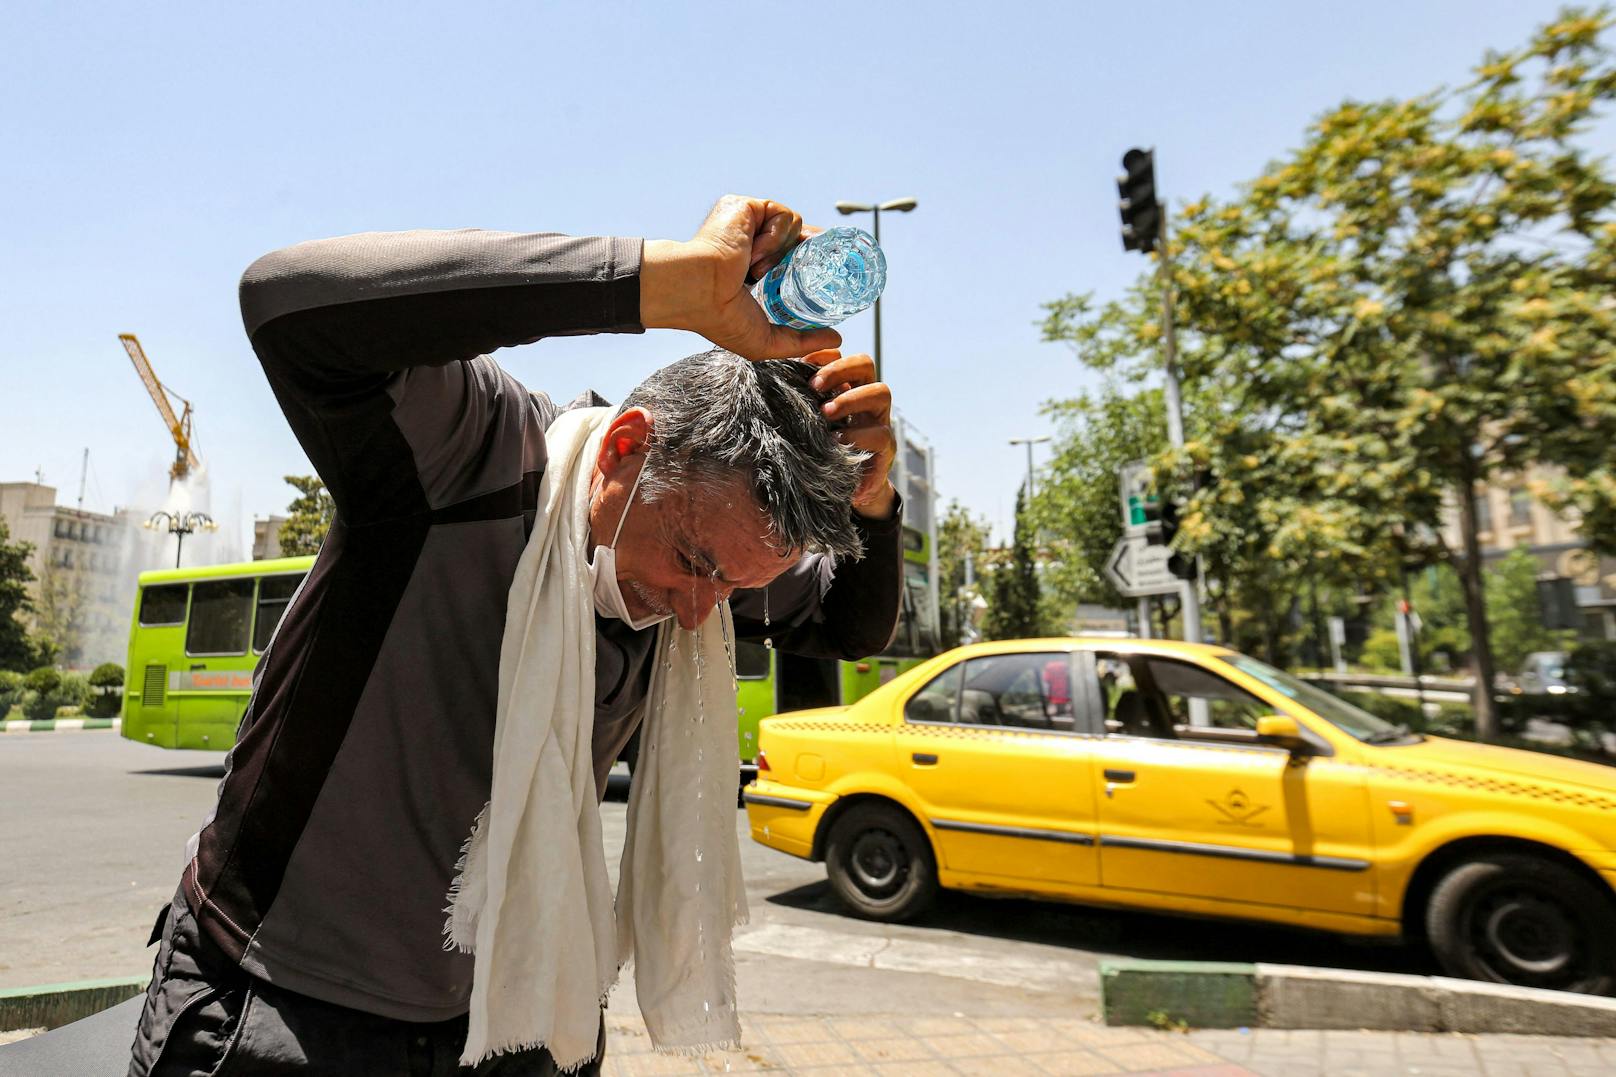 Temperaturen von 50 Grad – Iran bekommt Hitze-Lockdown